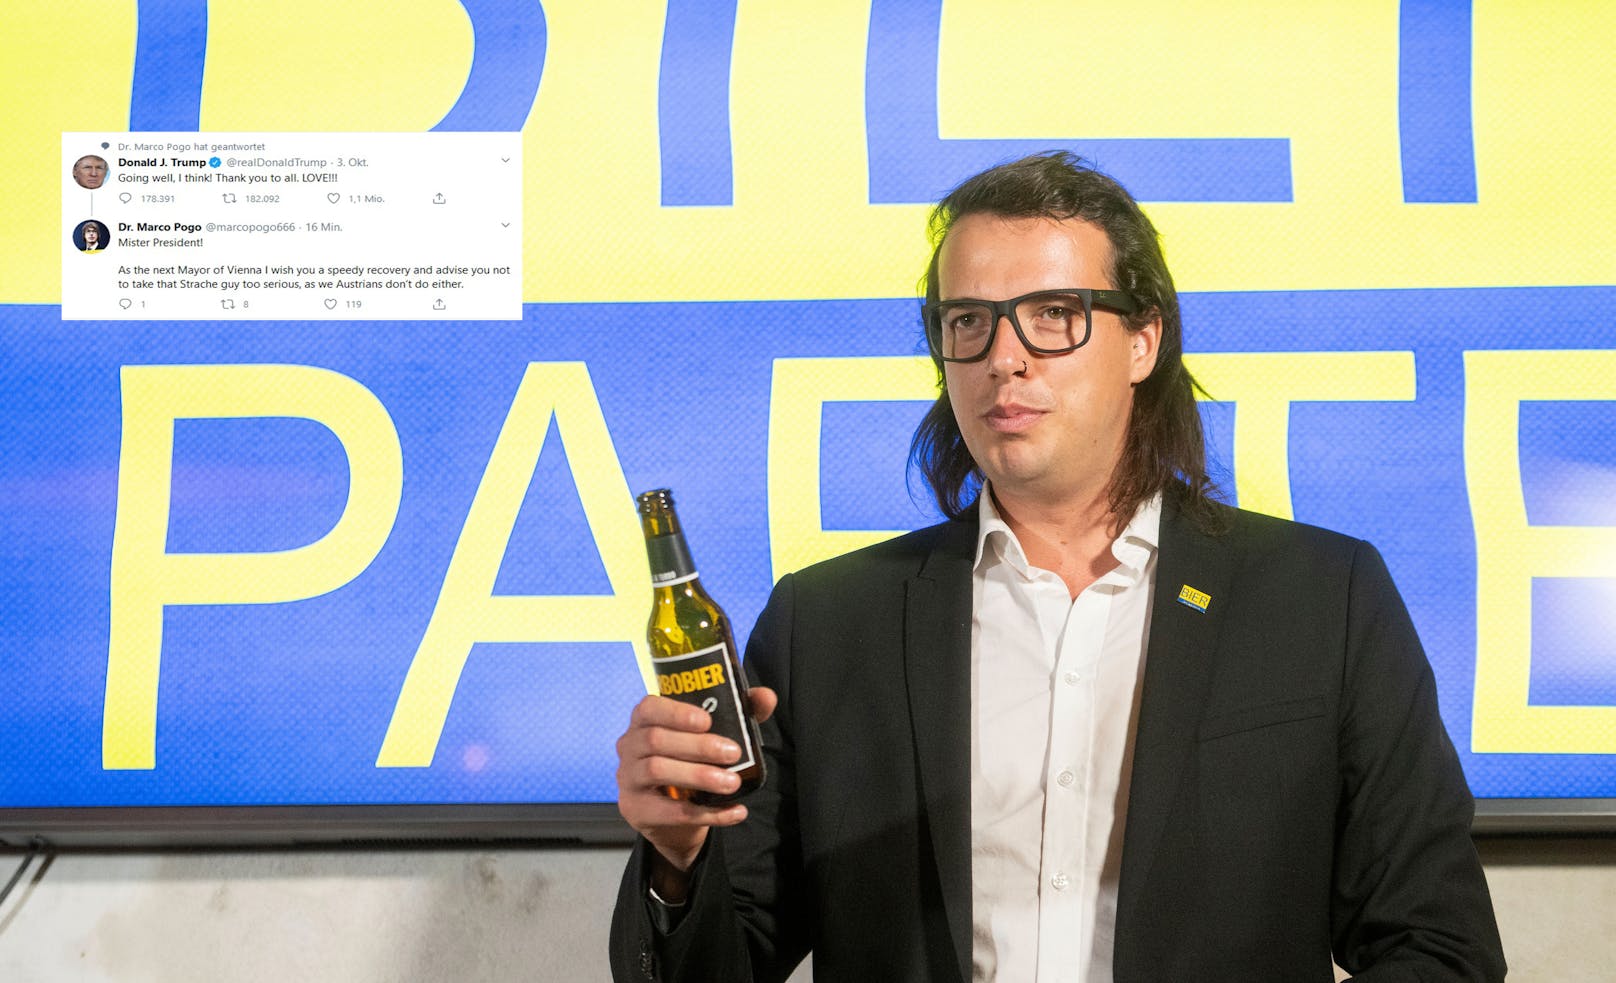 Die Bierpartei von Marco Pogo schafft laut einer Umfrage überraschend den Einzug in den Wiener Landtag.